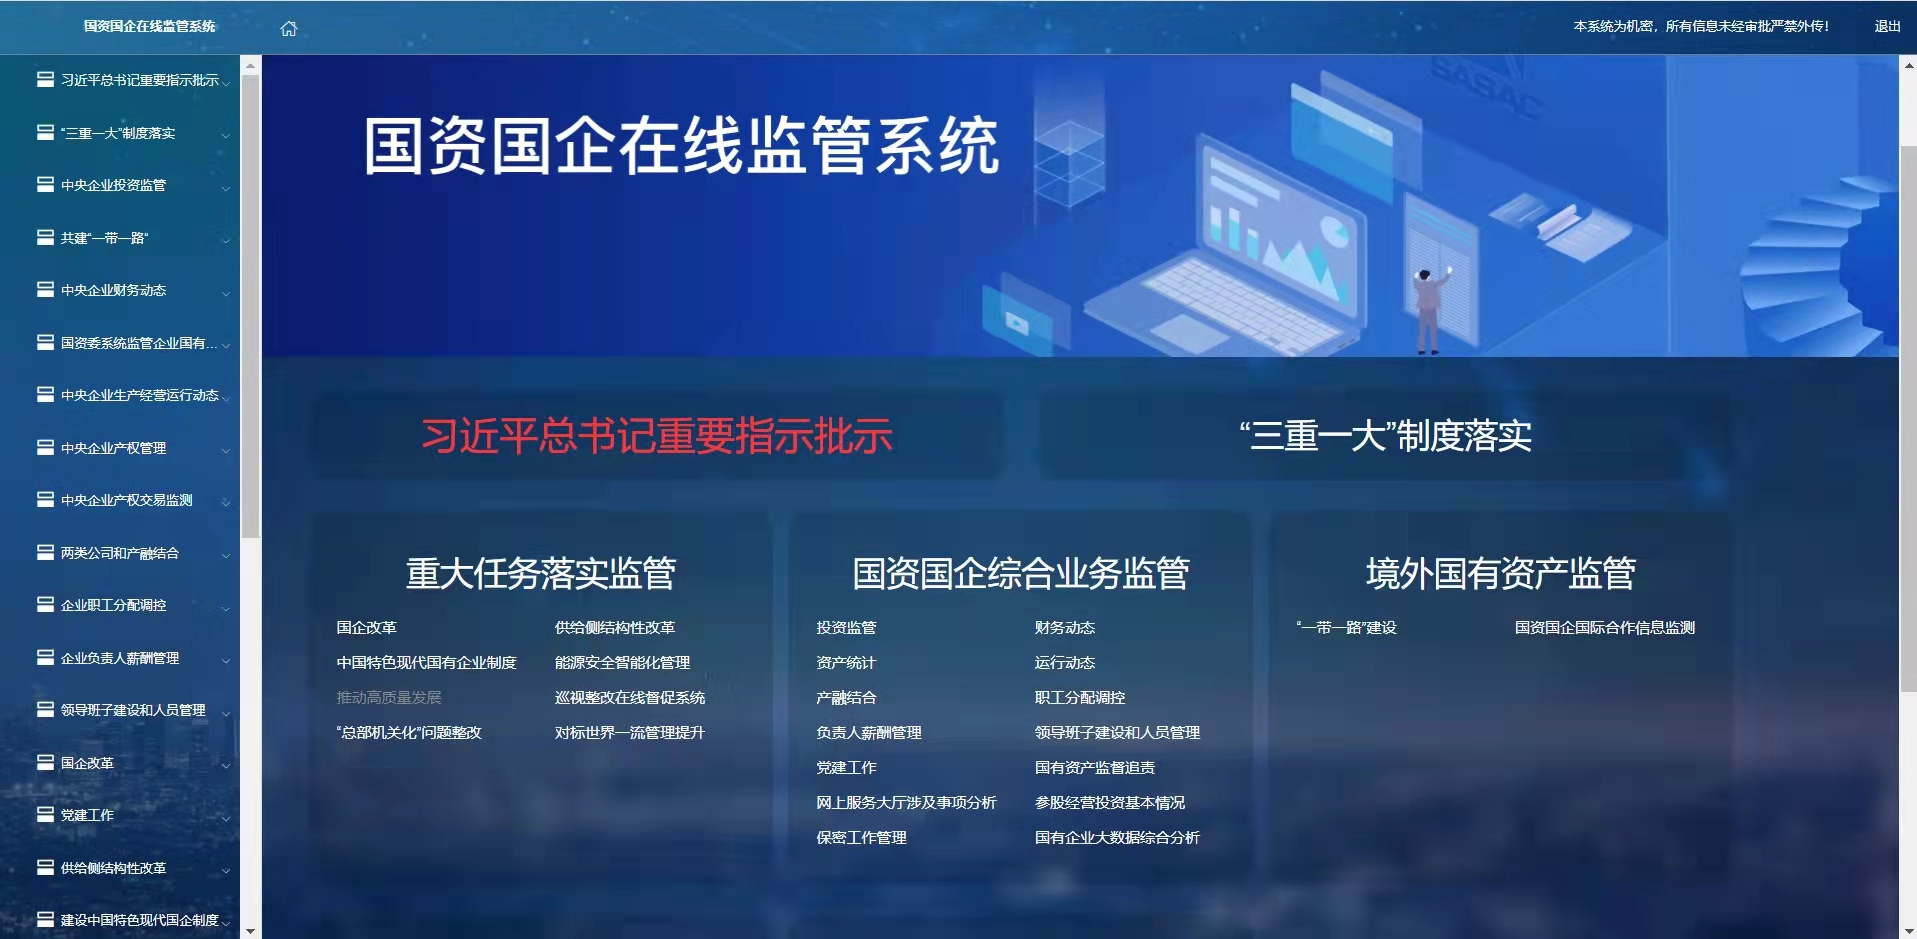 湖北省国资委综合监测展示系统项目